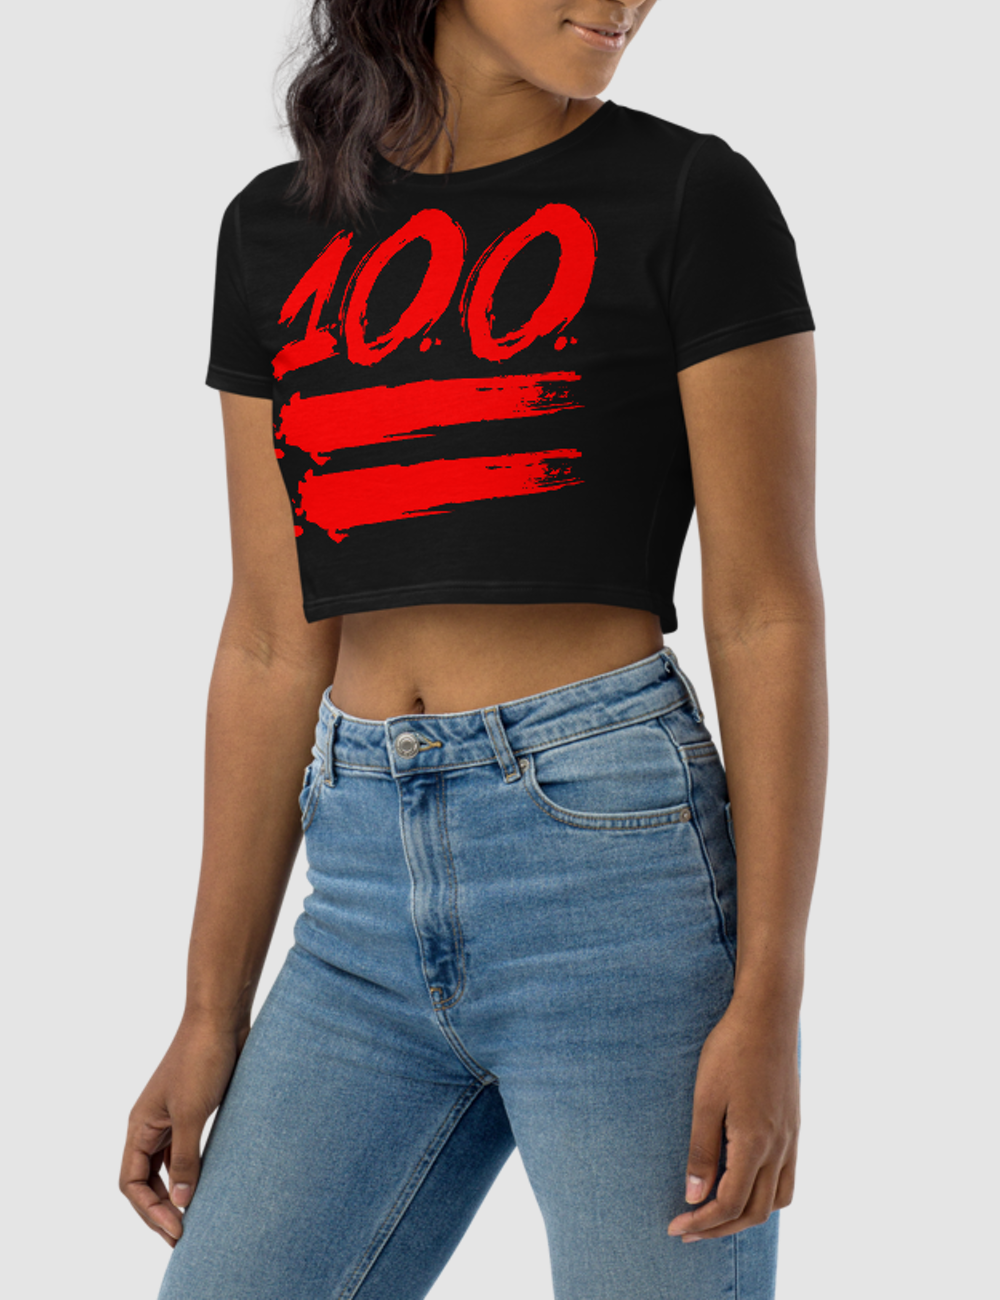 100 | Women's Crop Top T-Shirt OniTakai